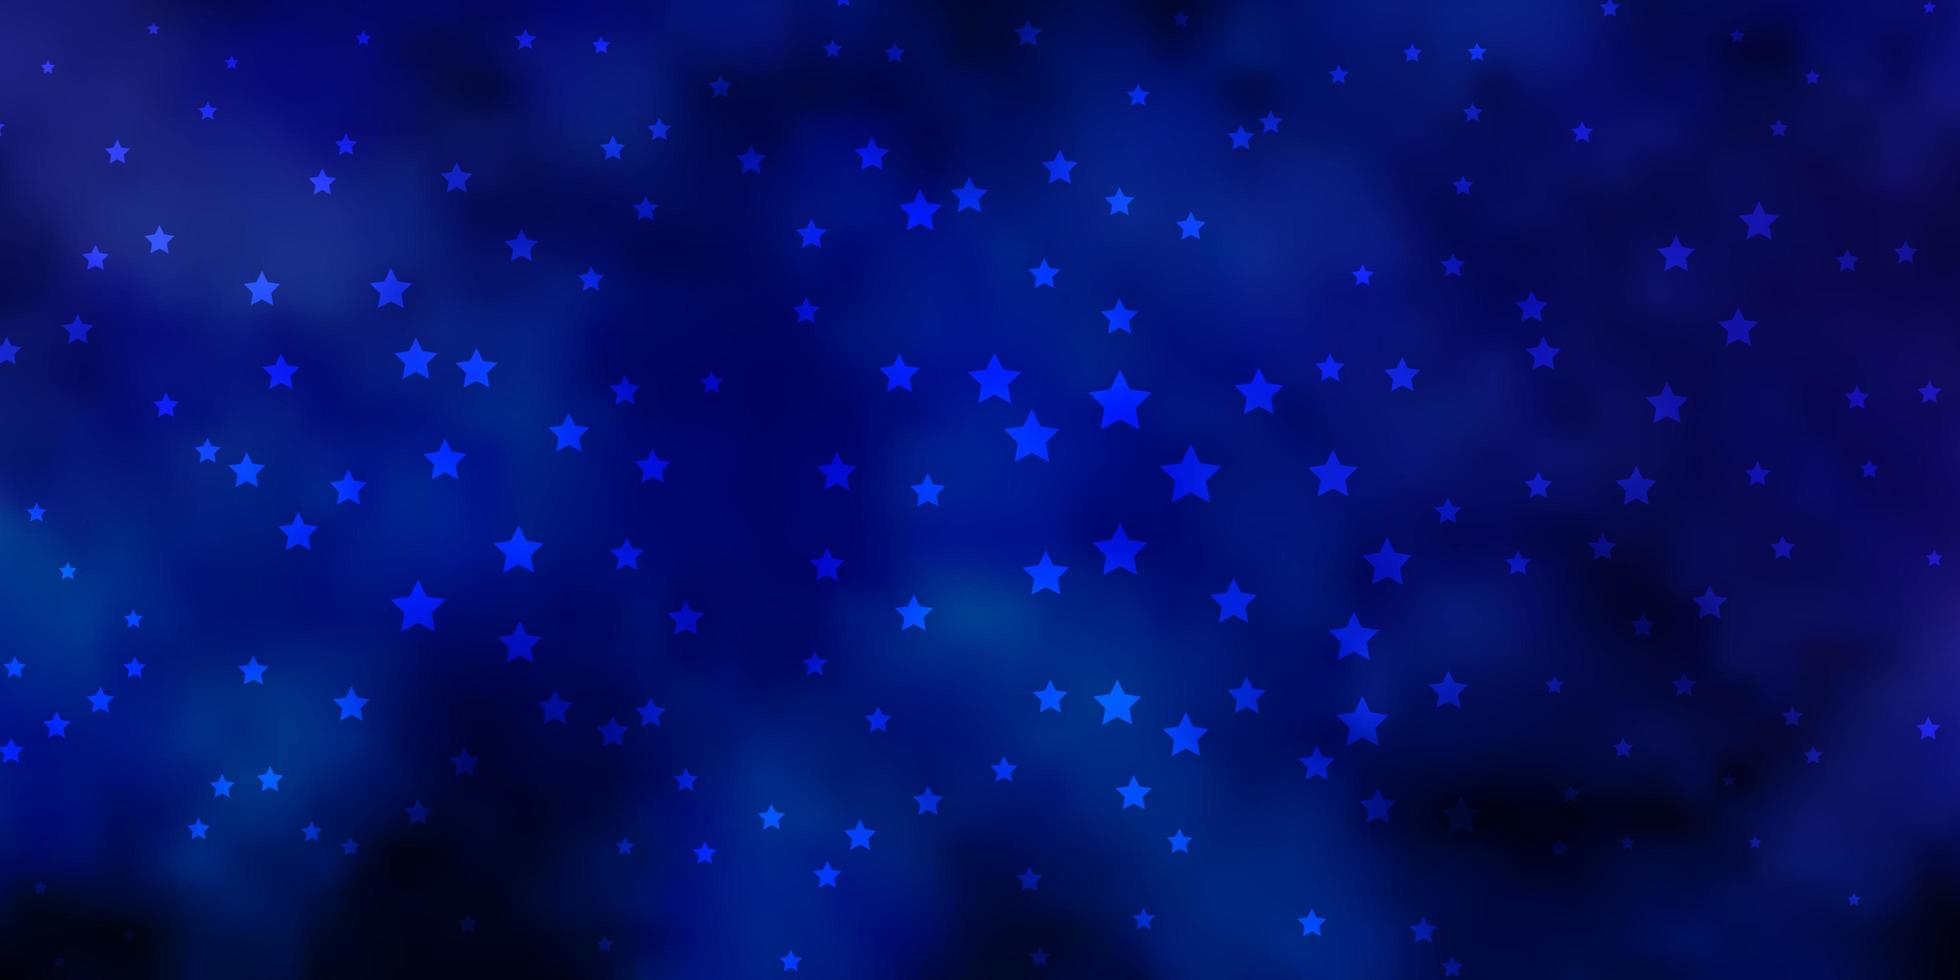 modèle vectoriel rose foncé, bleu avec des étoiles abstraites.